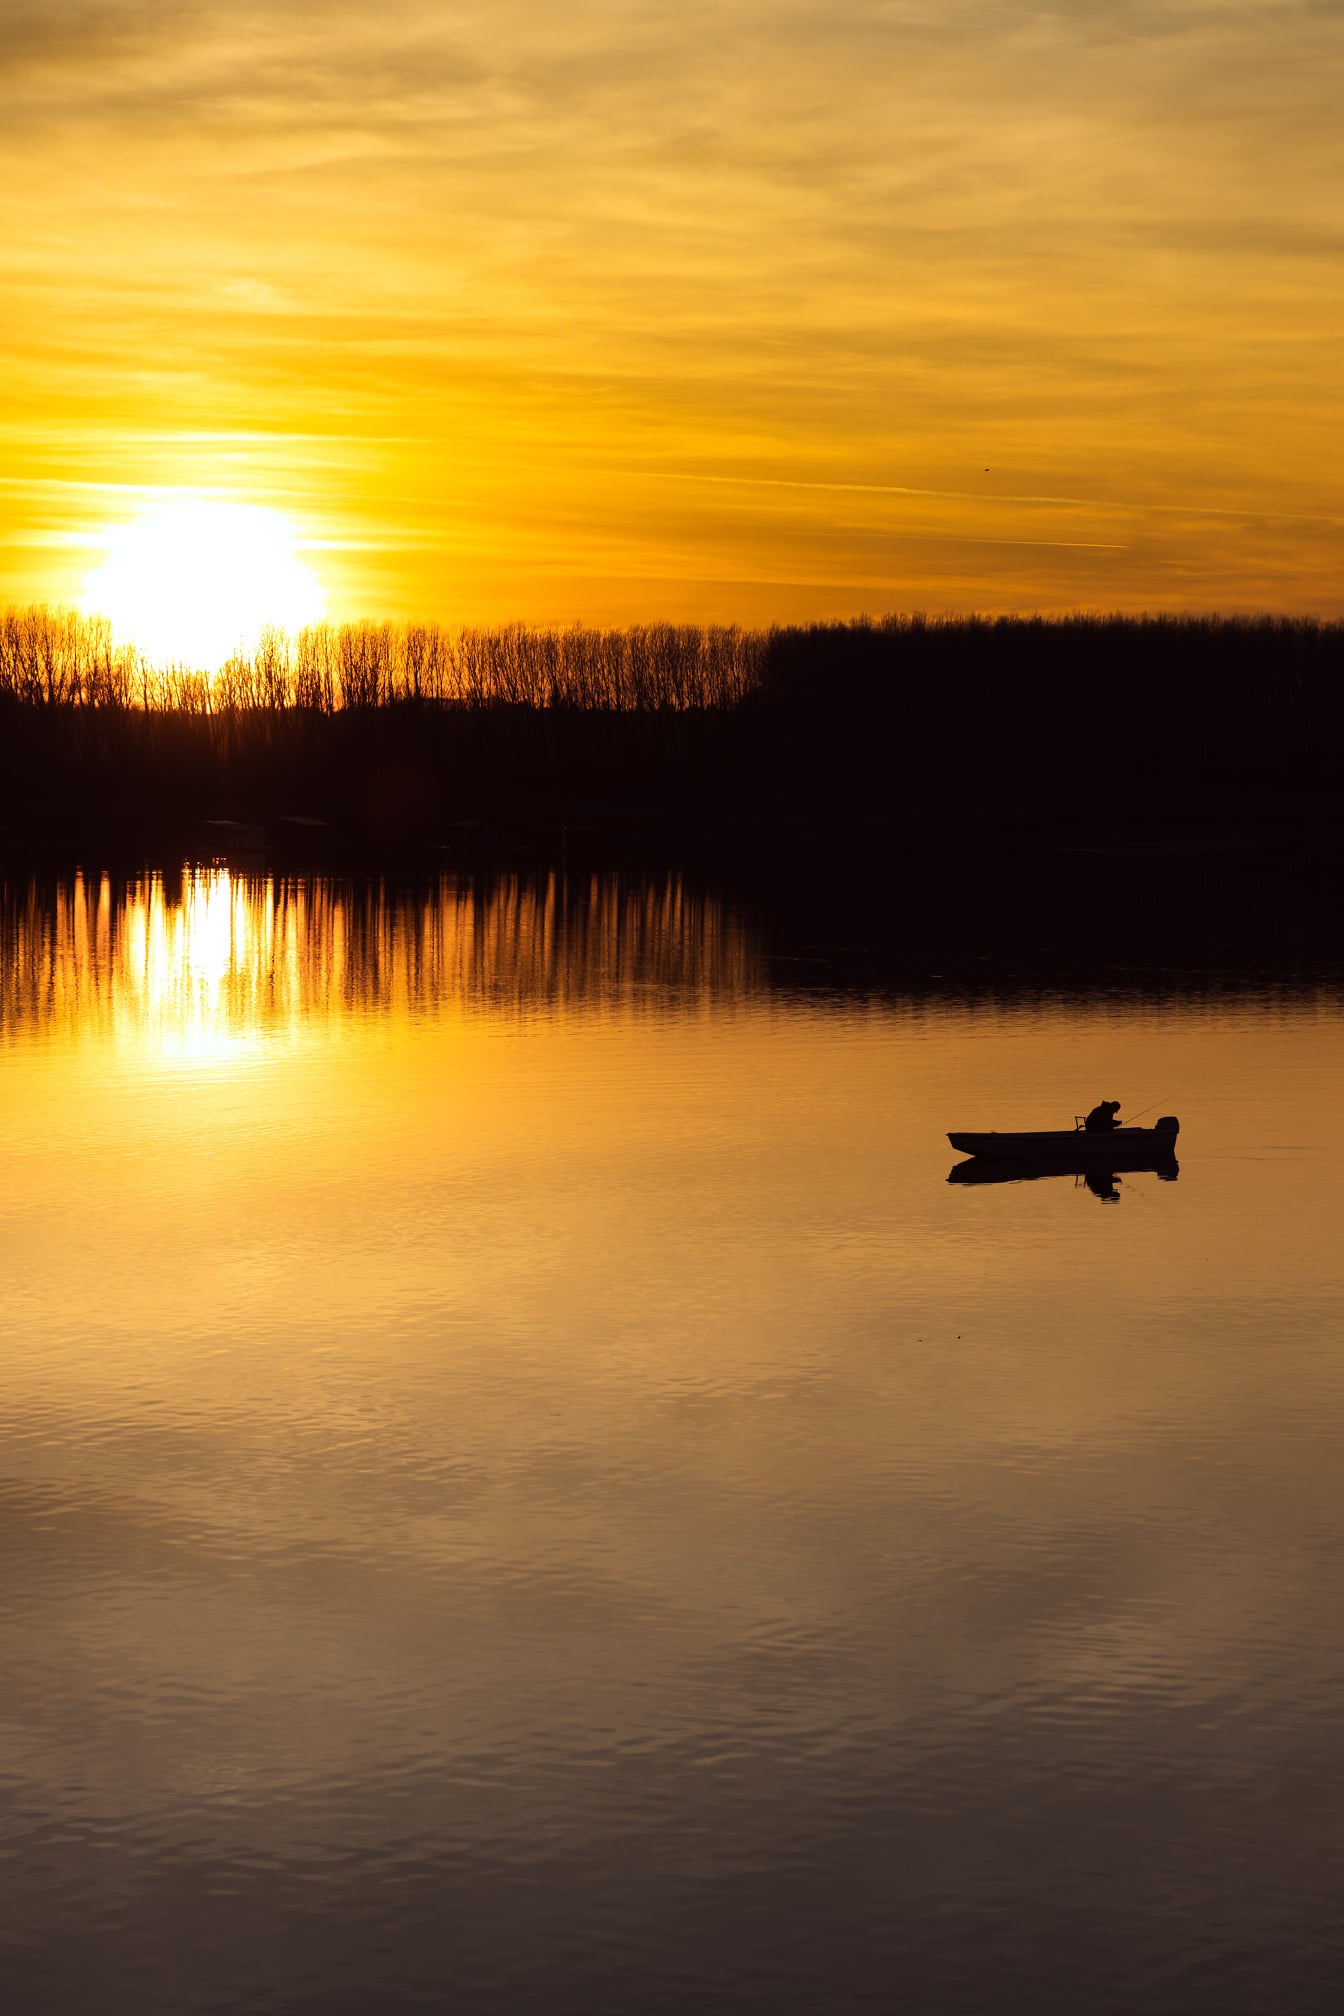 Ragyogó napfelkelte a tópart felett a halászhajó sziluettjével